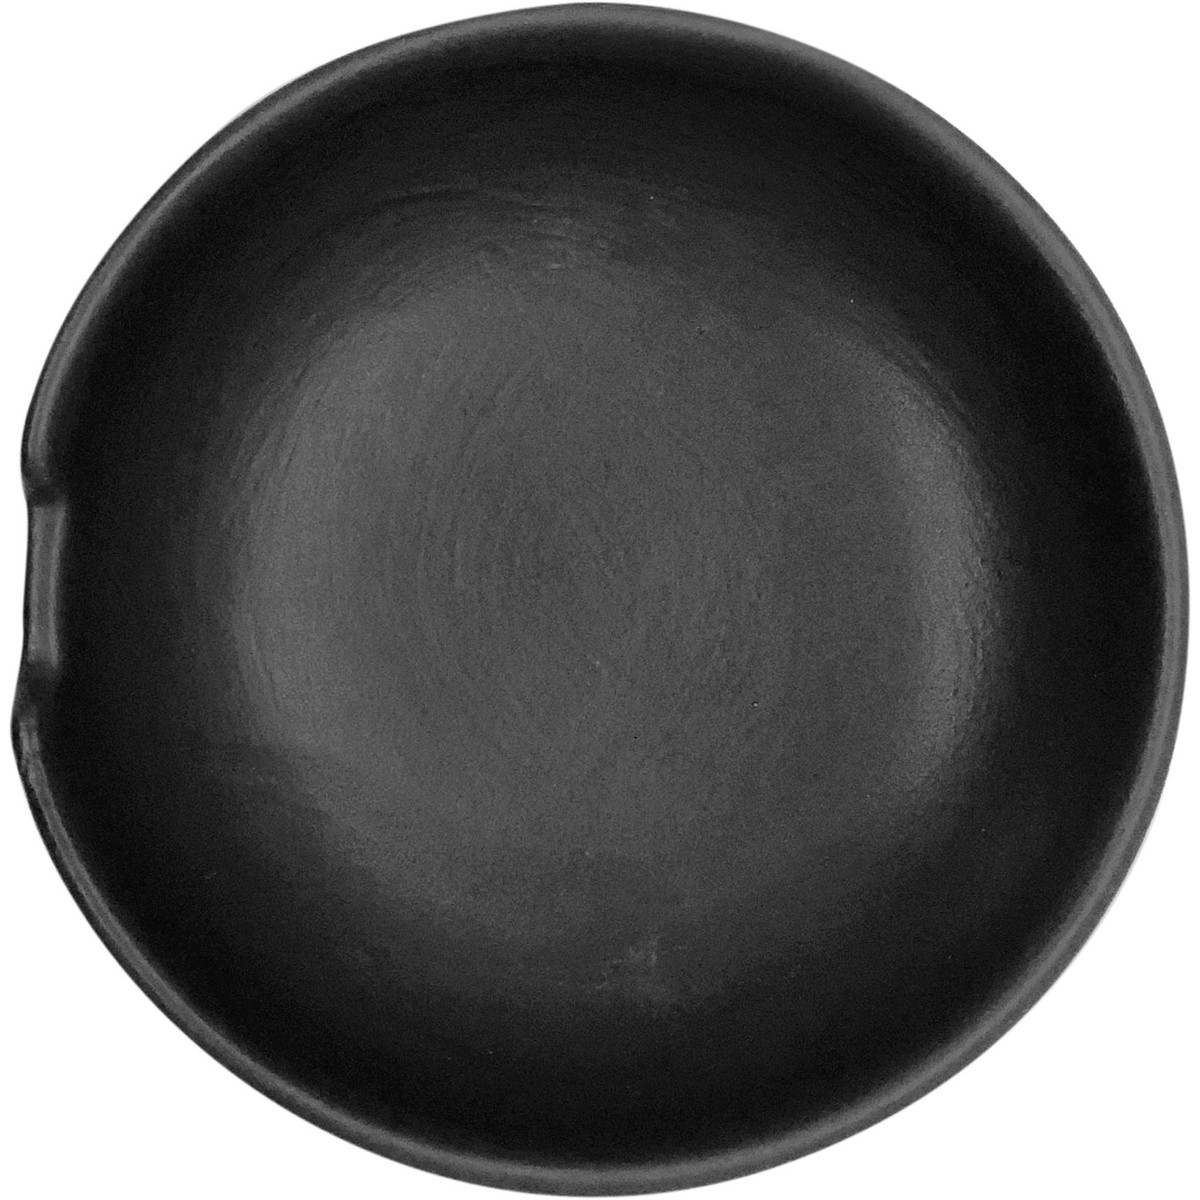 Keramik-Ablage schwarz  Reislöffelablage Ø 8cm schwarz